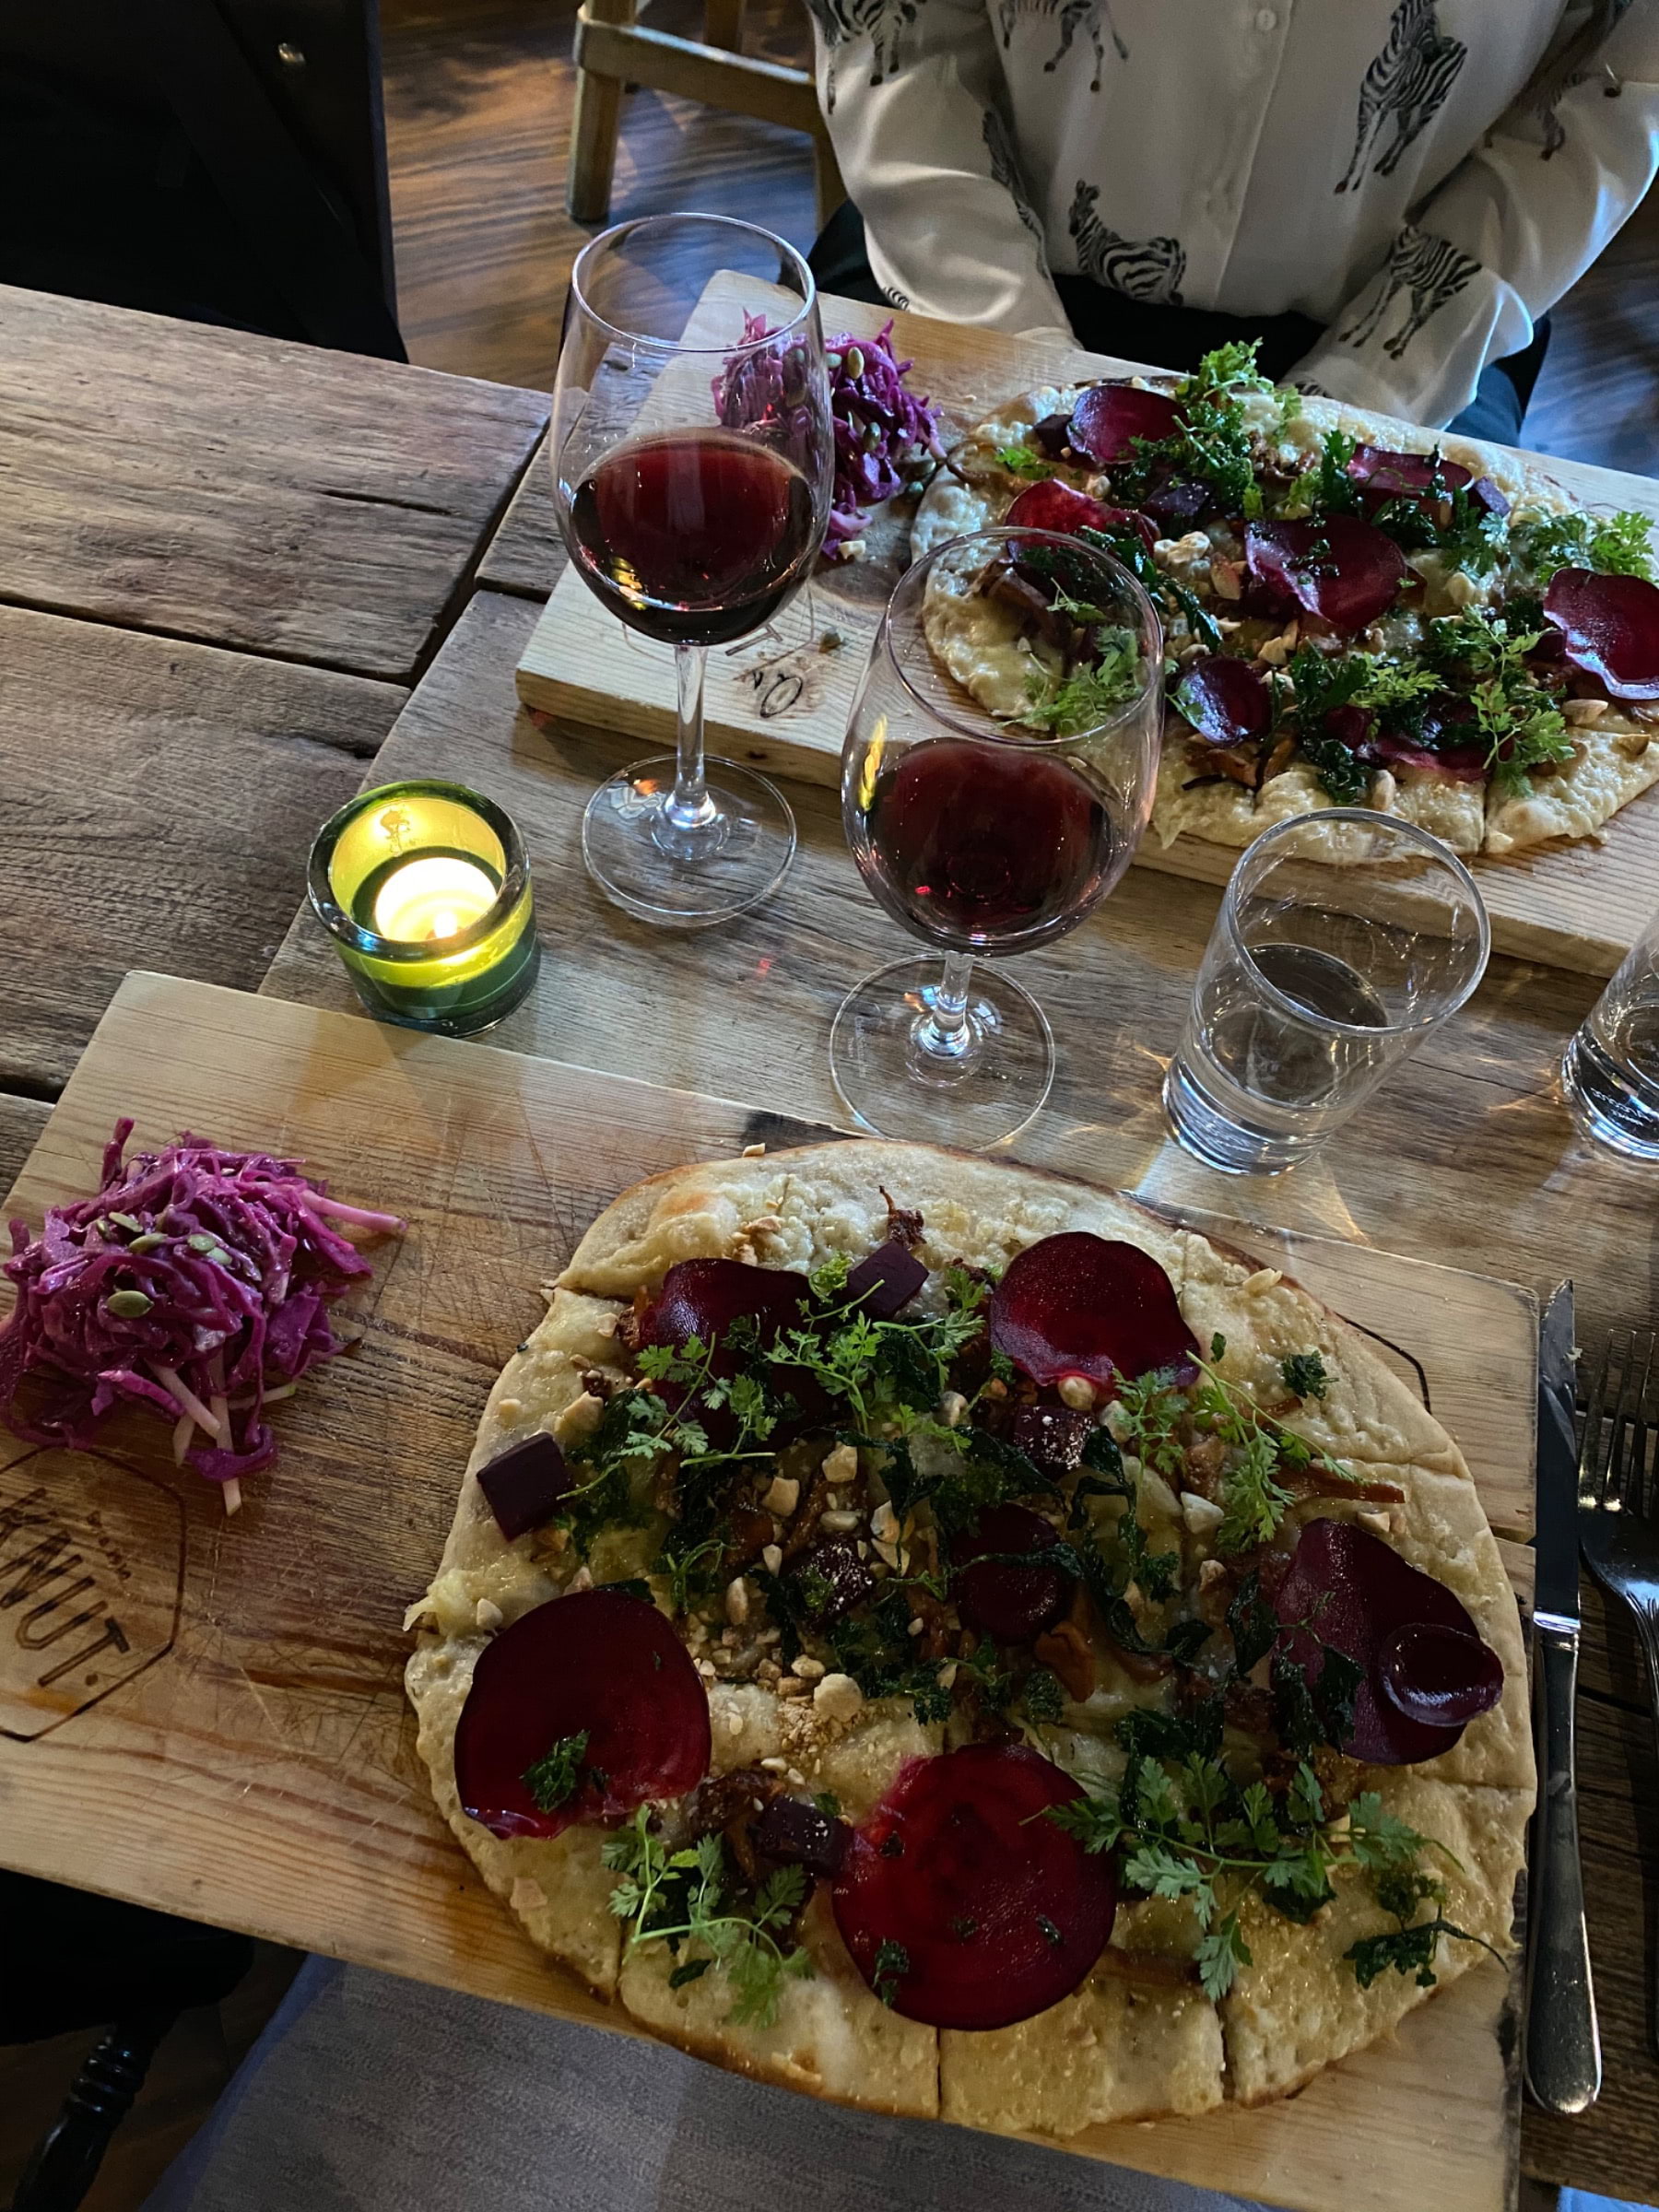 Tunnbrödspizza med Västerbottenost, smörstekta kantareller, bakade betor, persilja och mandel  – Photo from Knut Upplandsgatan by Lisa S. (20/09/2020)